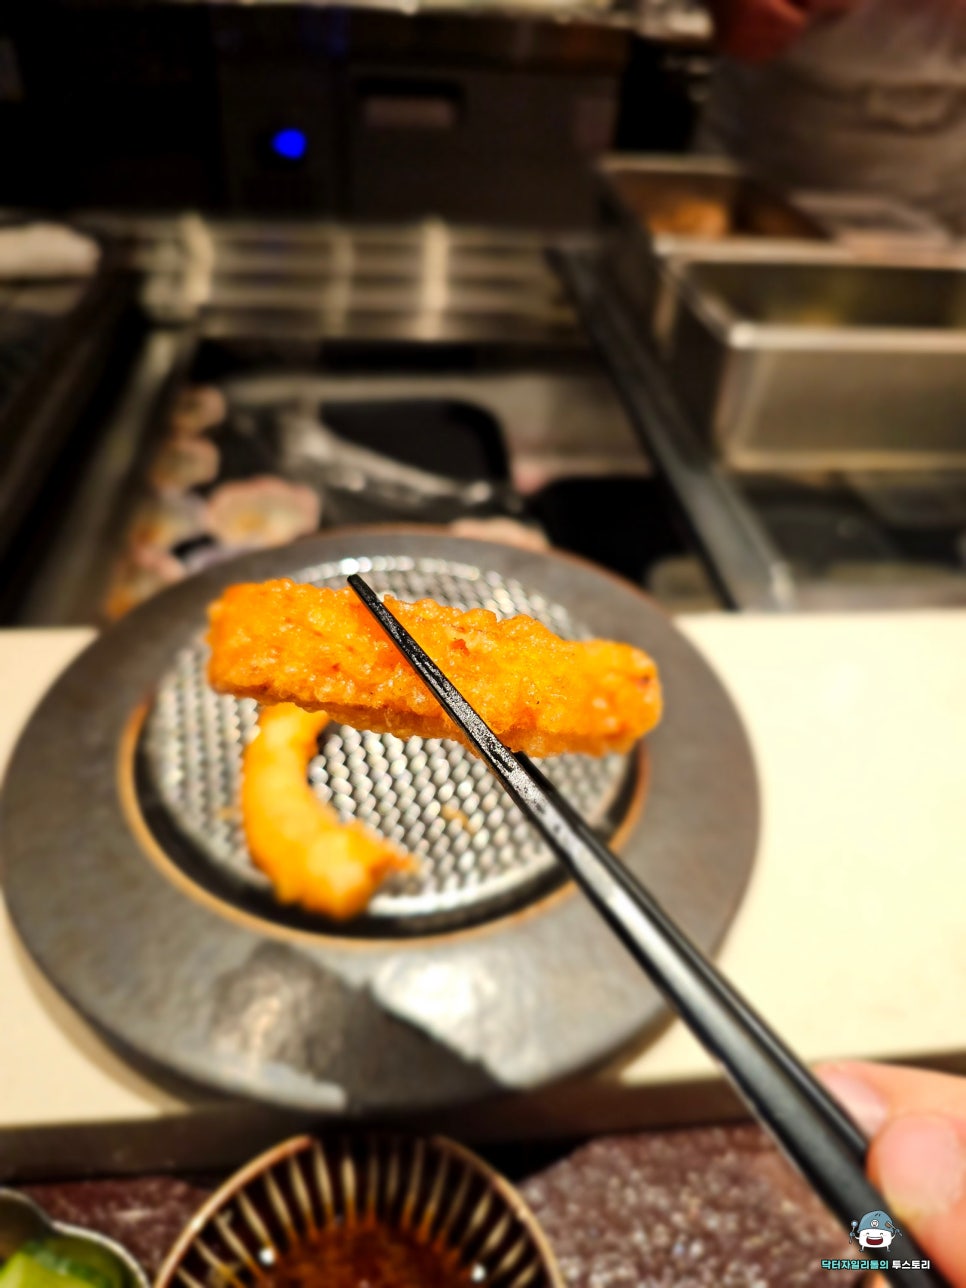 잠실 튀김오마카세 맛집 덴푸라감춘에서 직원들과의 식사 ! 튀김이 이렇게까지 맛있을 수 있는건가요